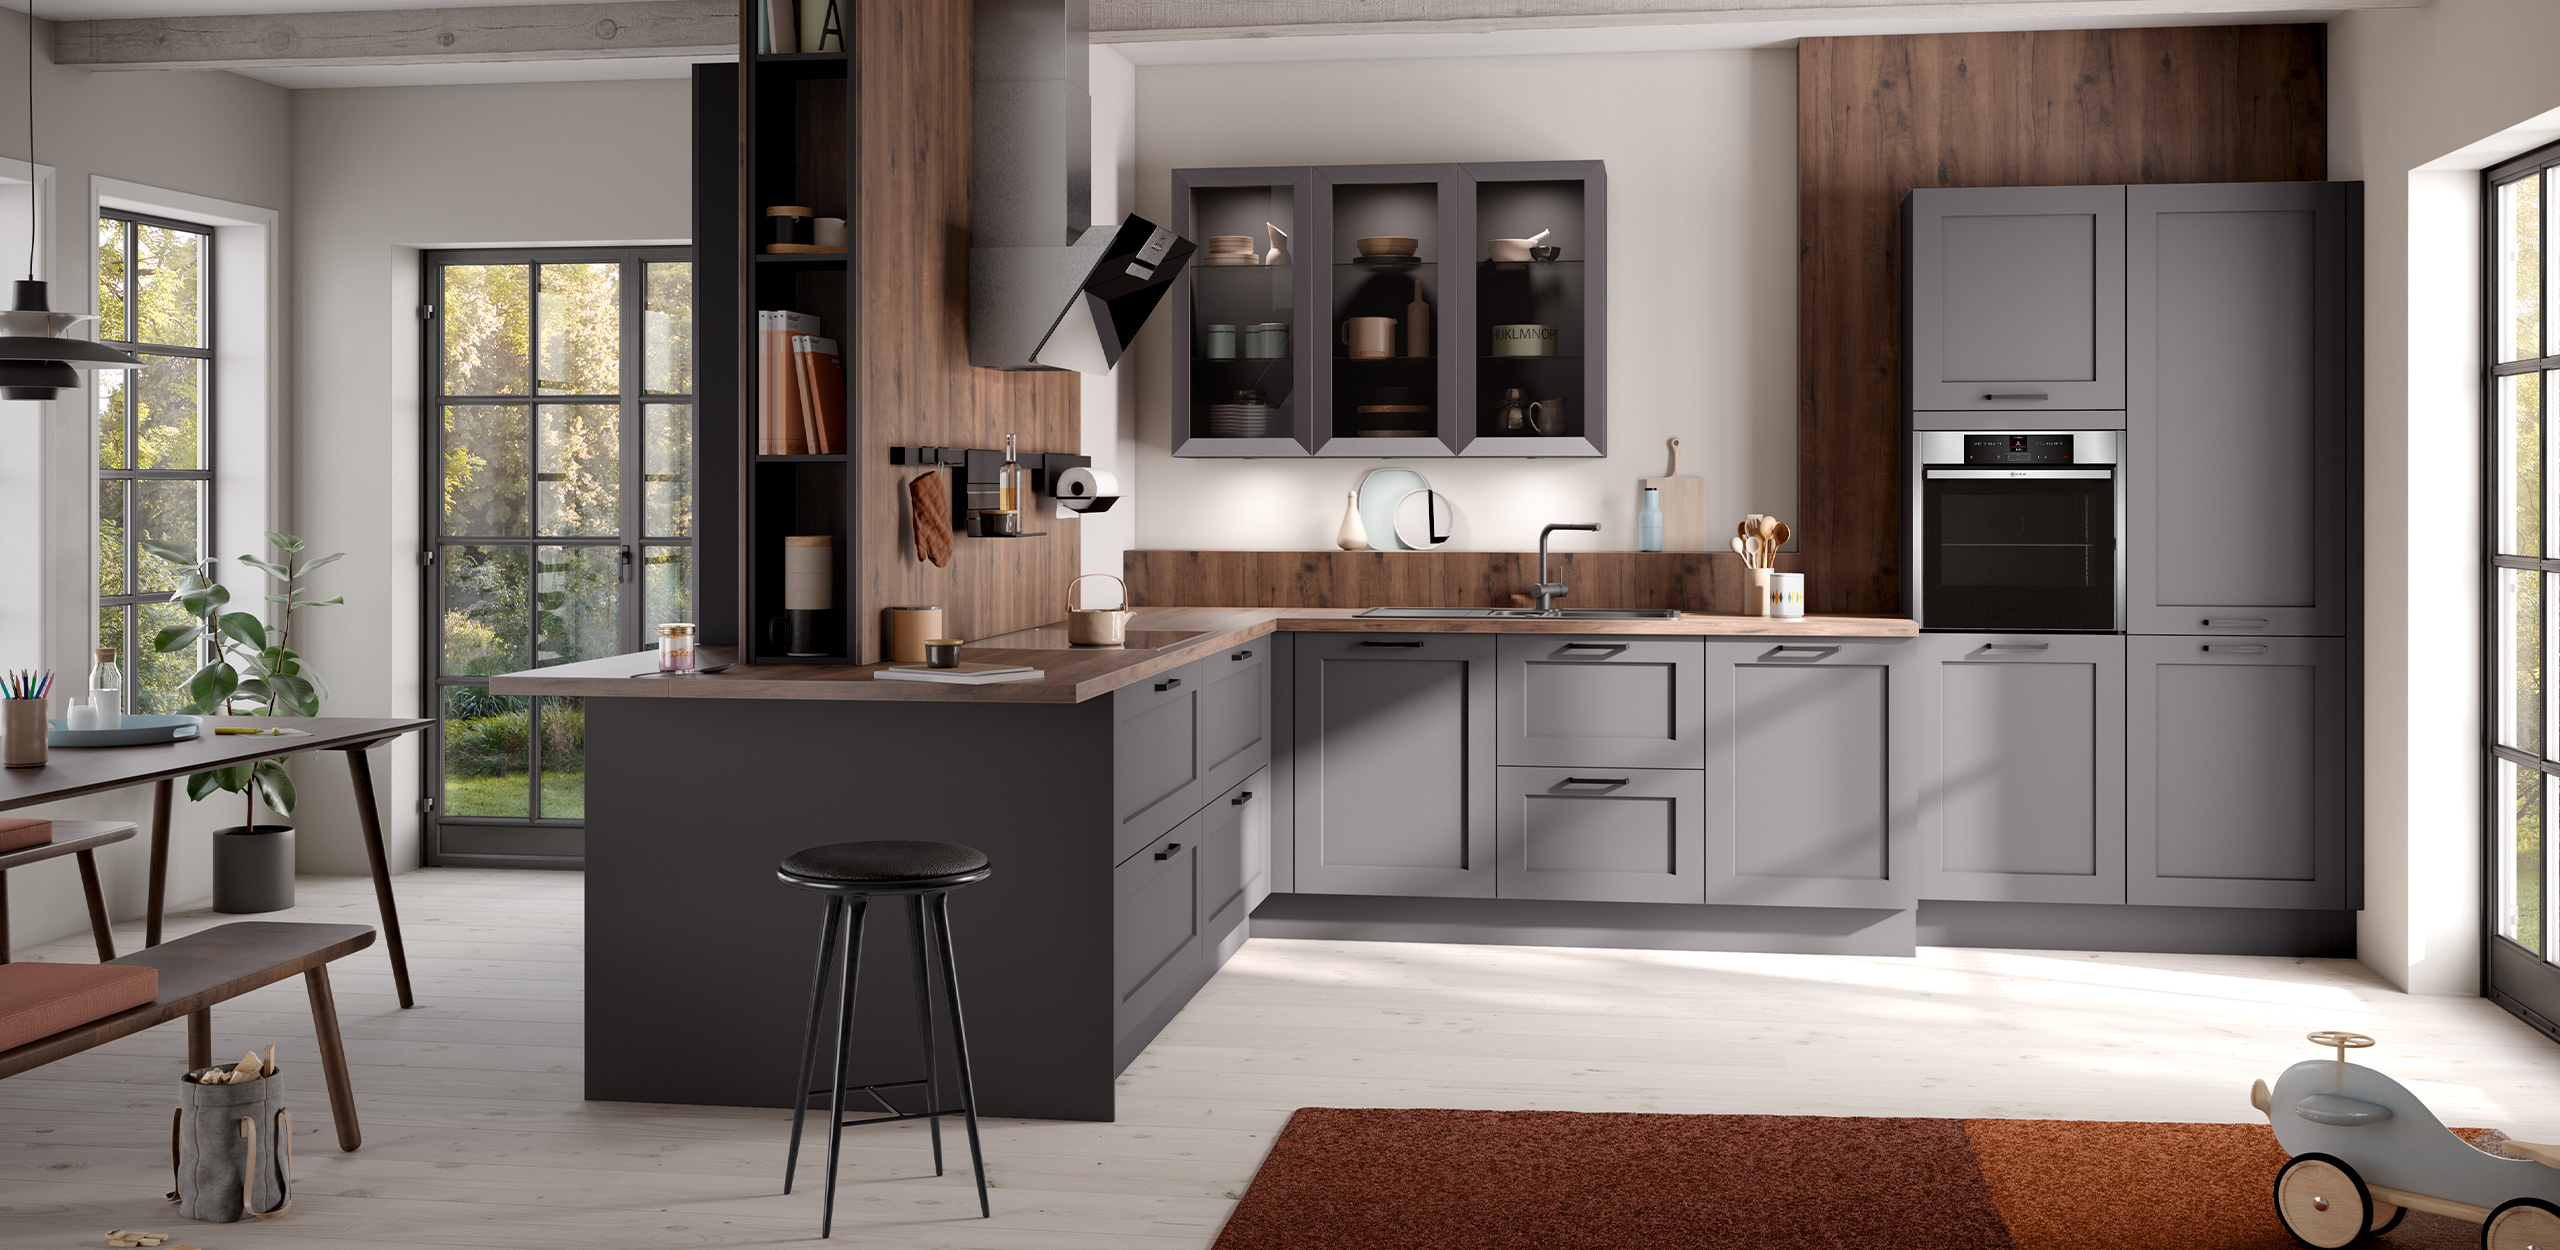 Foto der concept130 ROMA Graphit in der Gesamtansicht mit Küchenzeile, Hochschränken, Oberschränken, Sitzgruppe und Esstisch